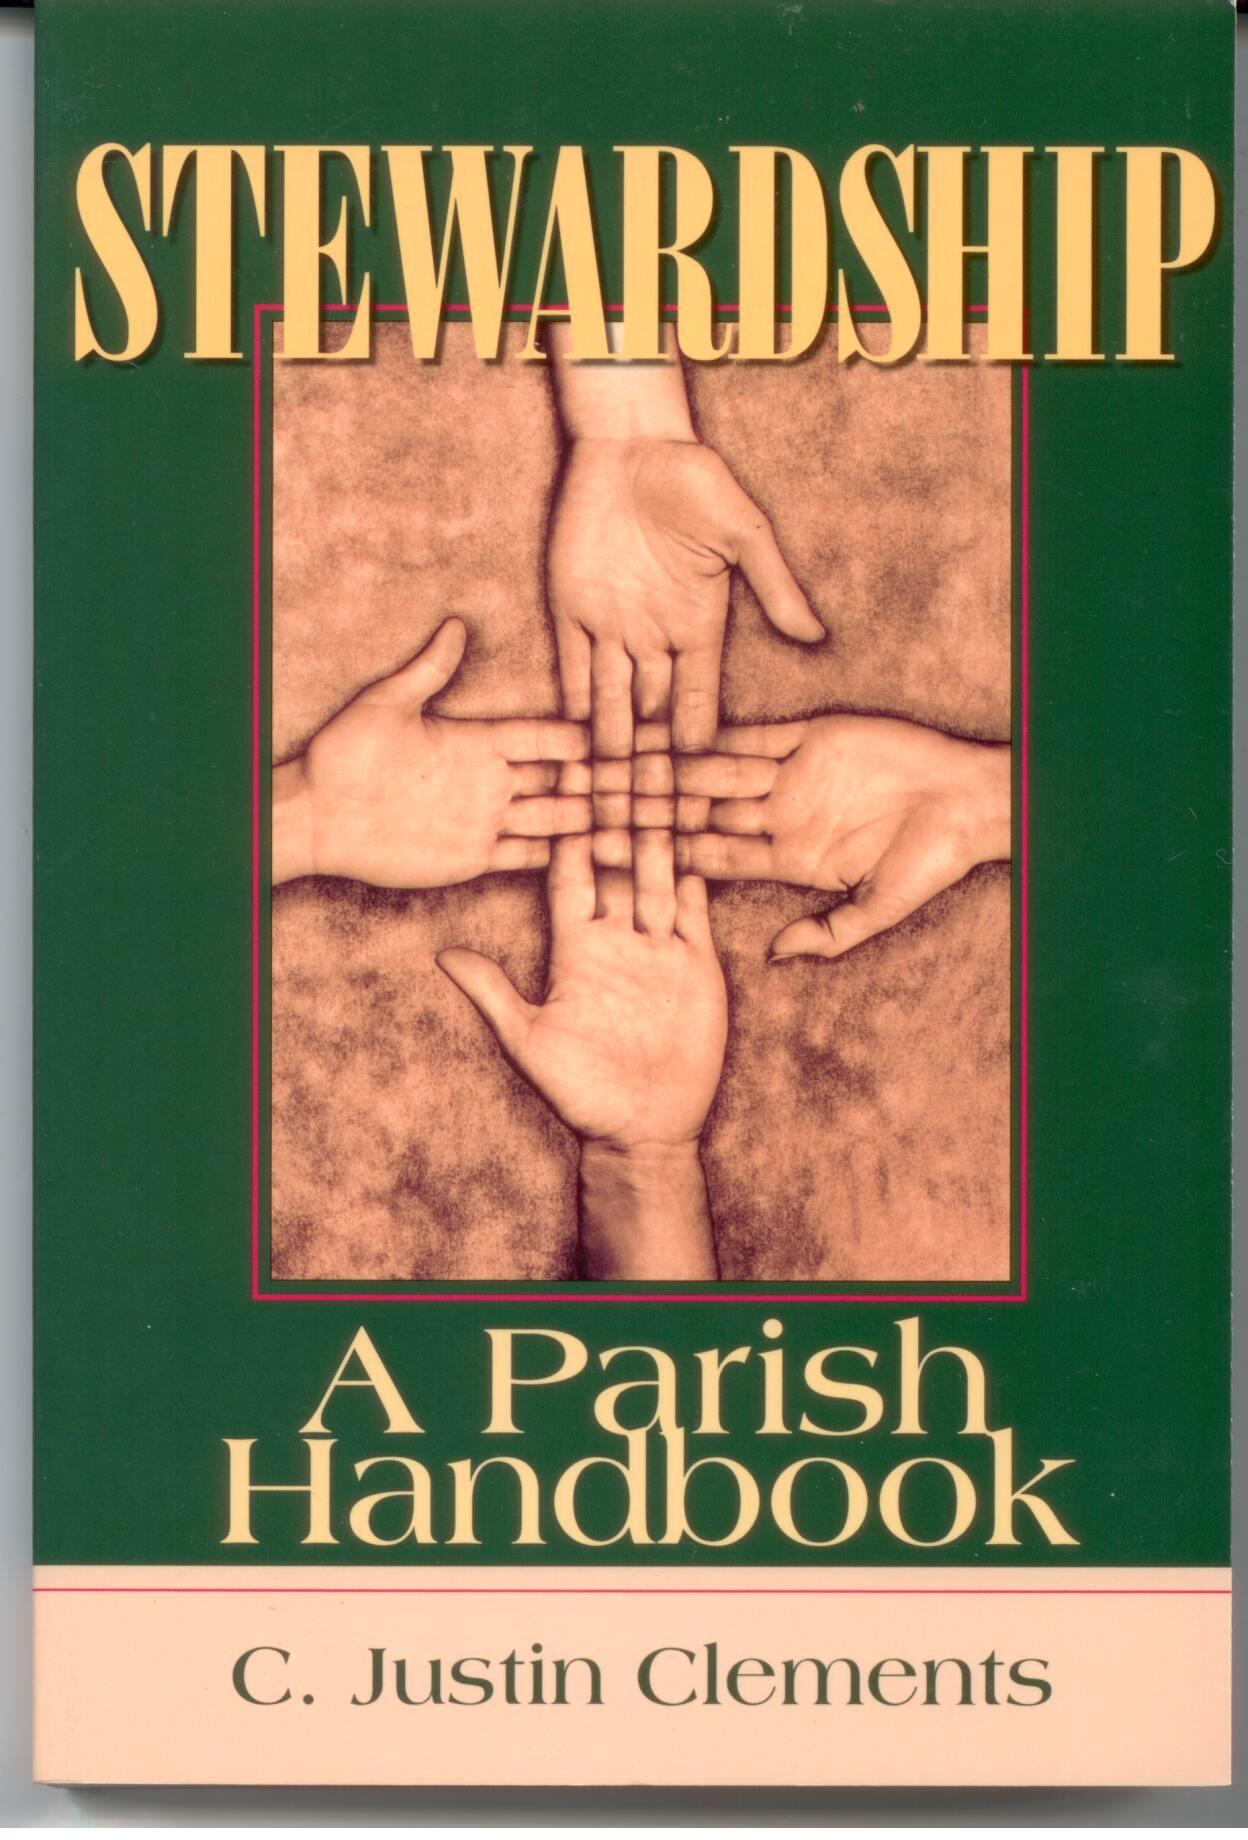 Stewardship: A Parish Handbook by C. Justin Clements